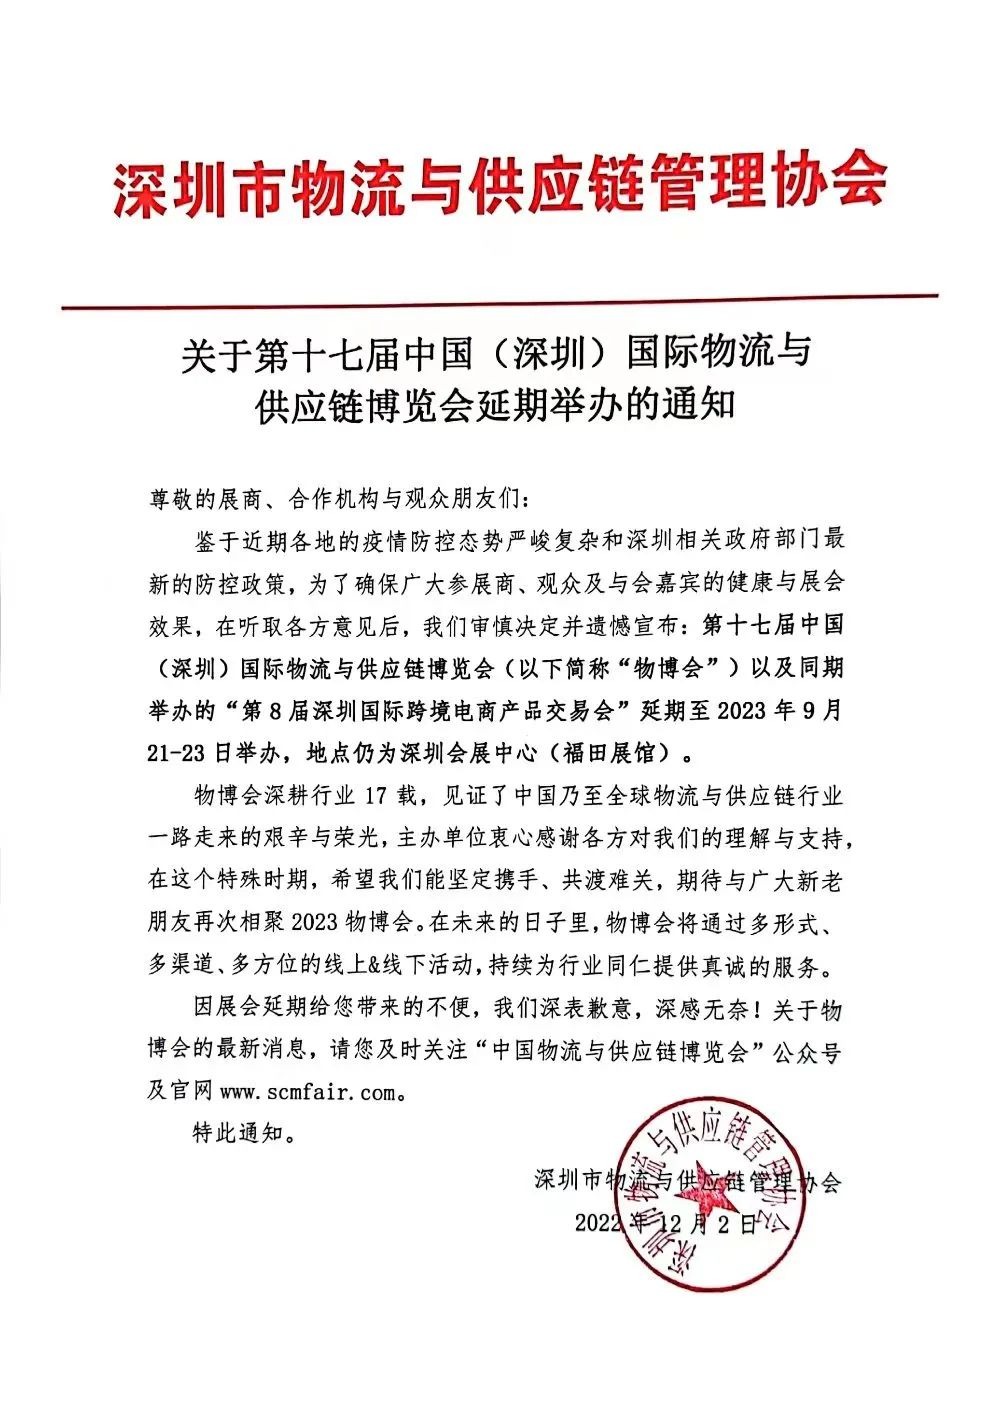 深圳物流与供应链博览会延期